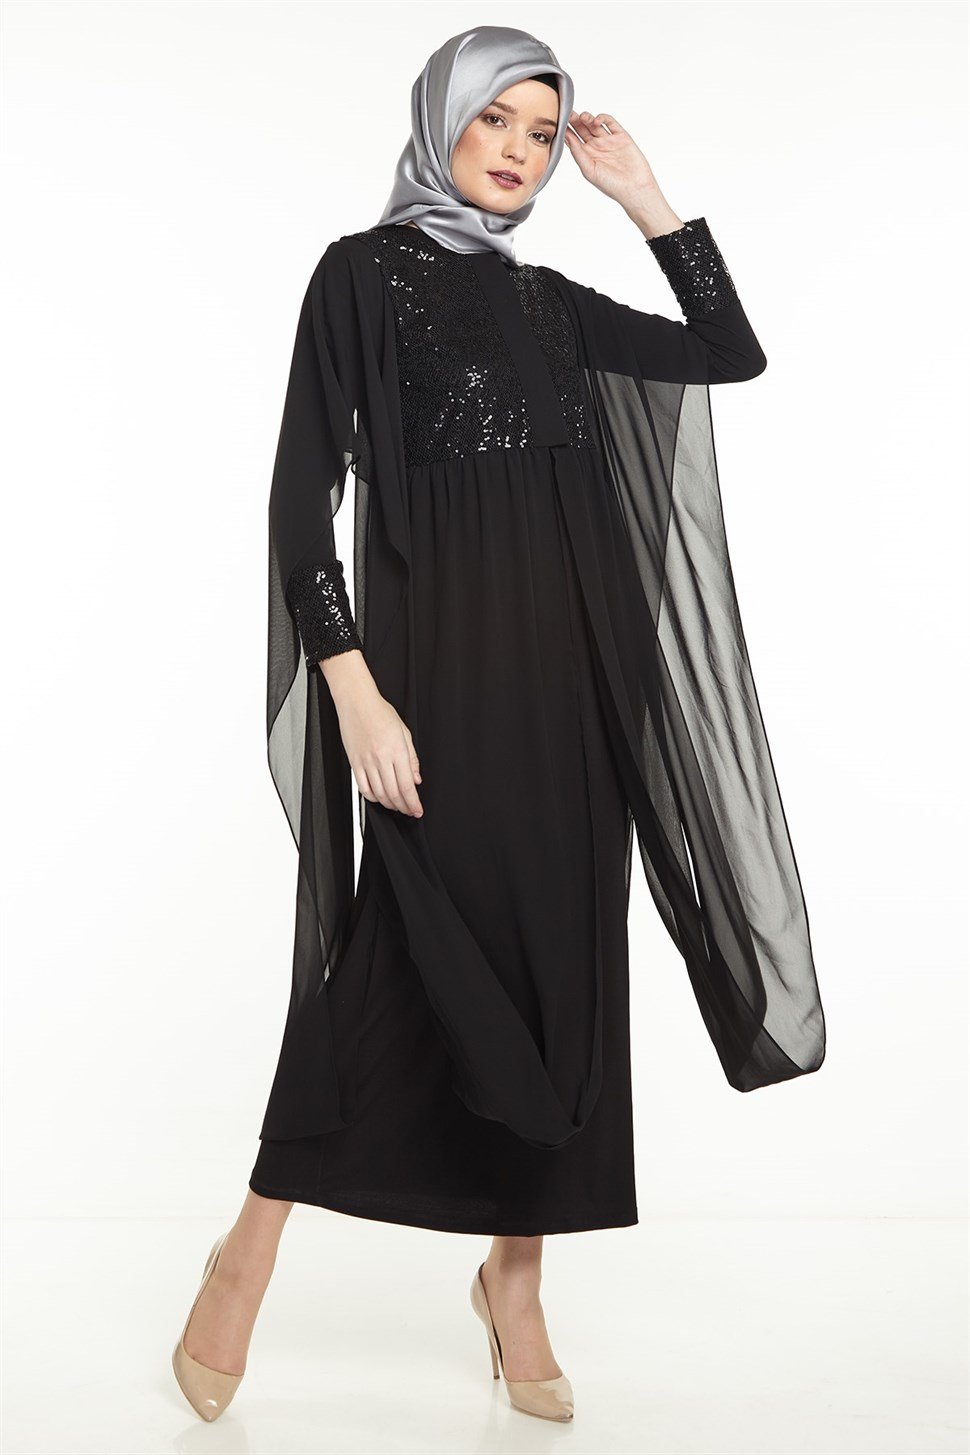 Armine Şifon Detaylı Takım Elbise 8Y6574 Siyah - ARMİNE | Hayatınıza Artı  Değer Katar!